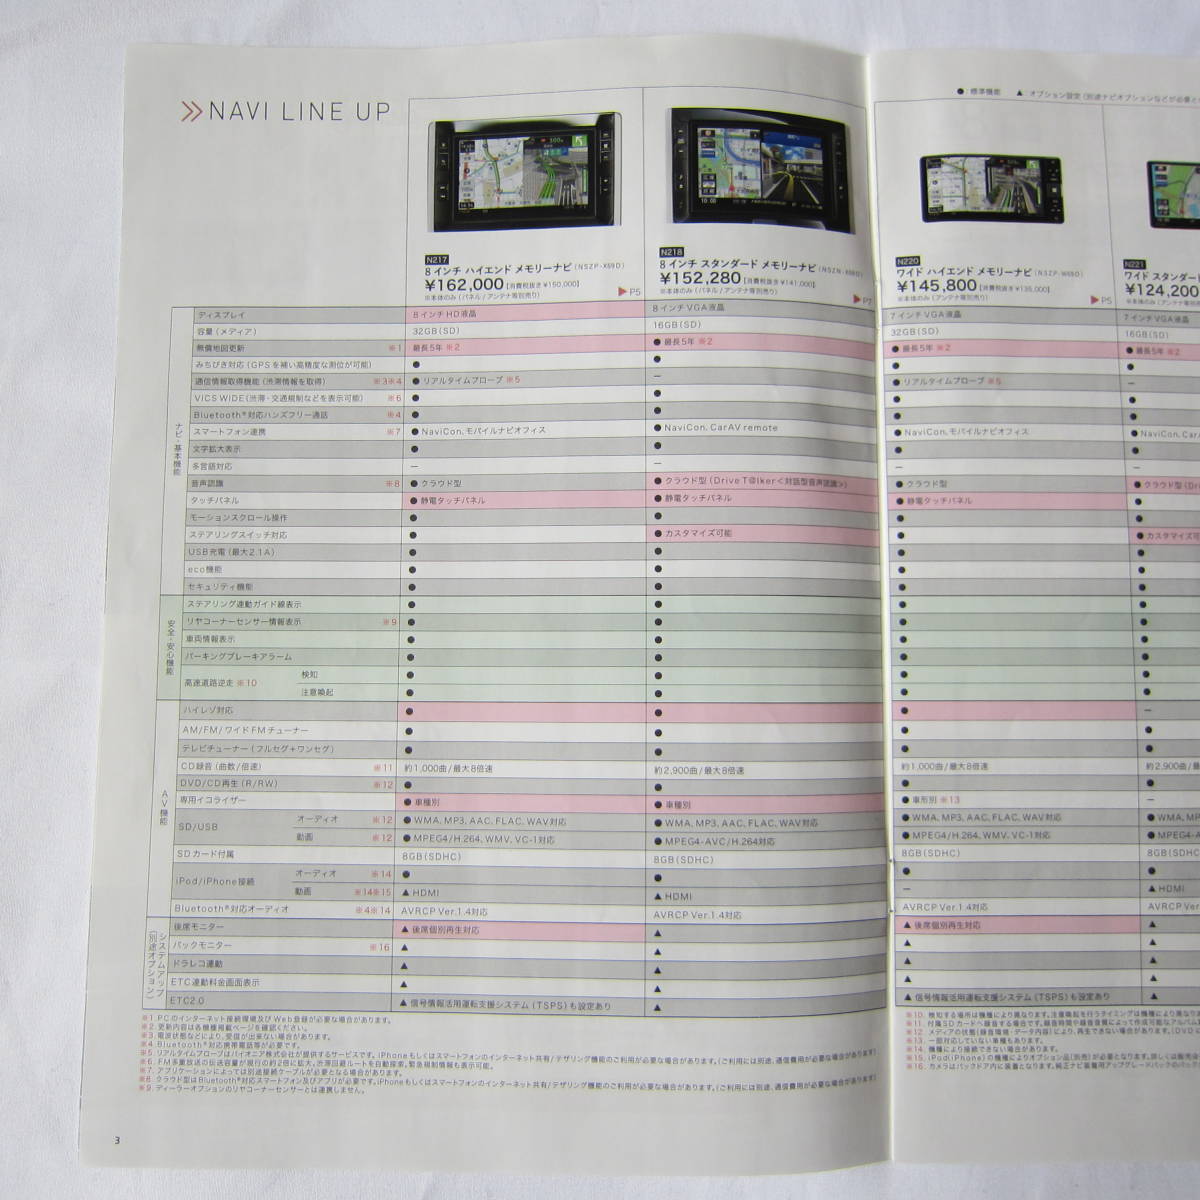  Daihatsu Tanto 2019 audio visual & navigation catalog 